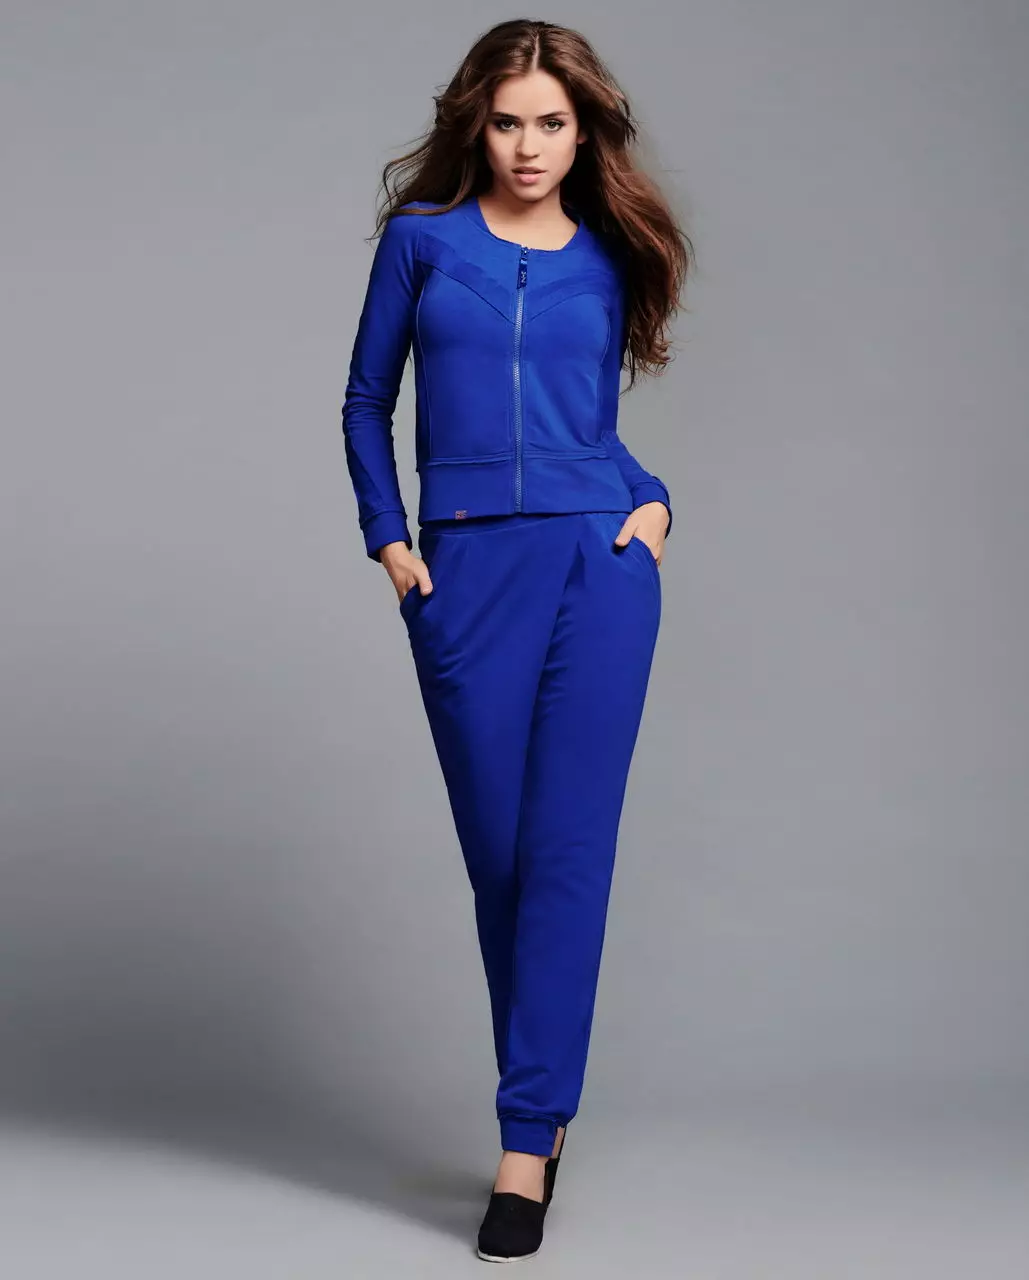 ブルーパンツ2021（109写真）を着用するもの：明るく濃い青、女性のスタイリッシュなモデル 967_8